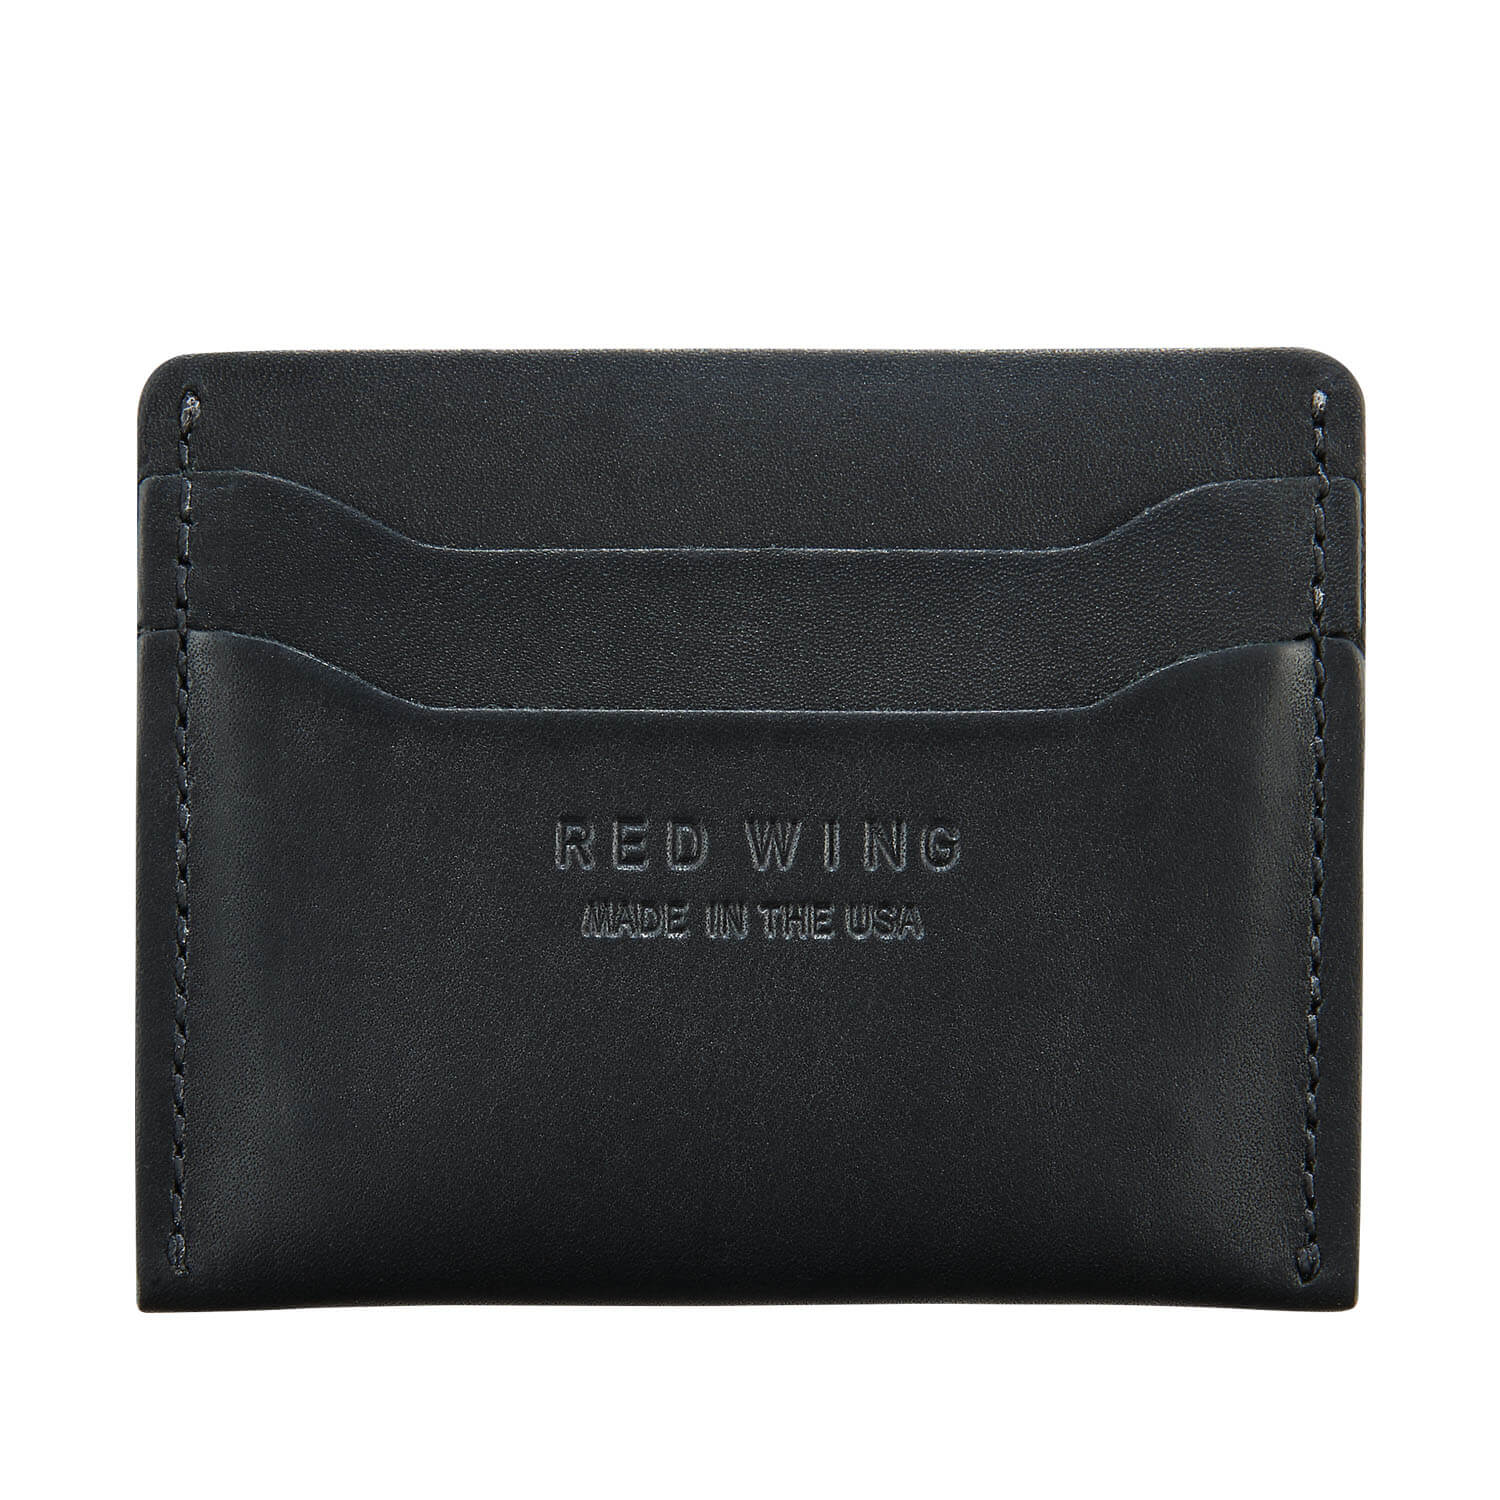 Credit Card Wallet, Leather, Black/ Red, Credit Card Holder